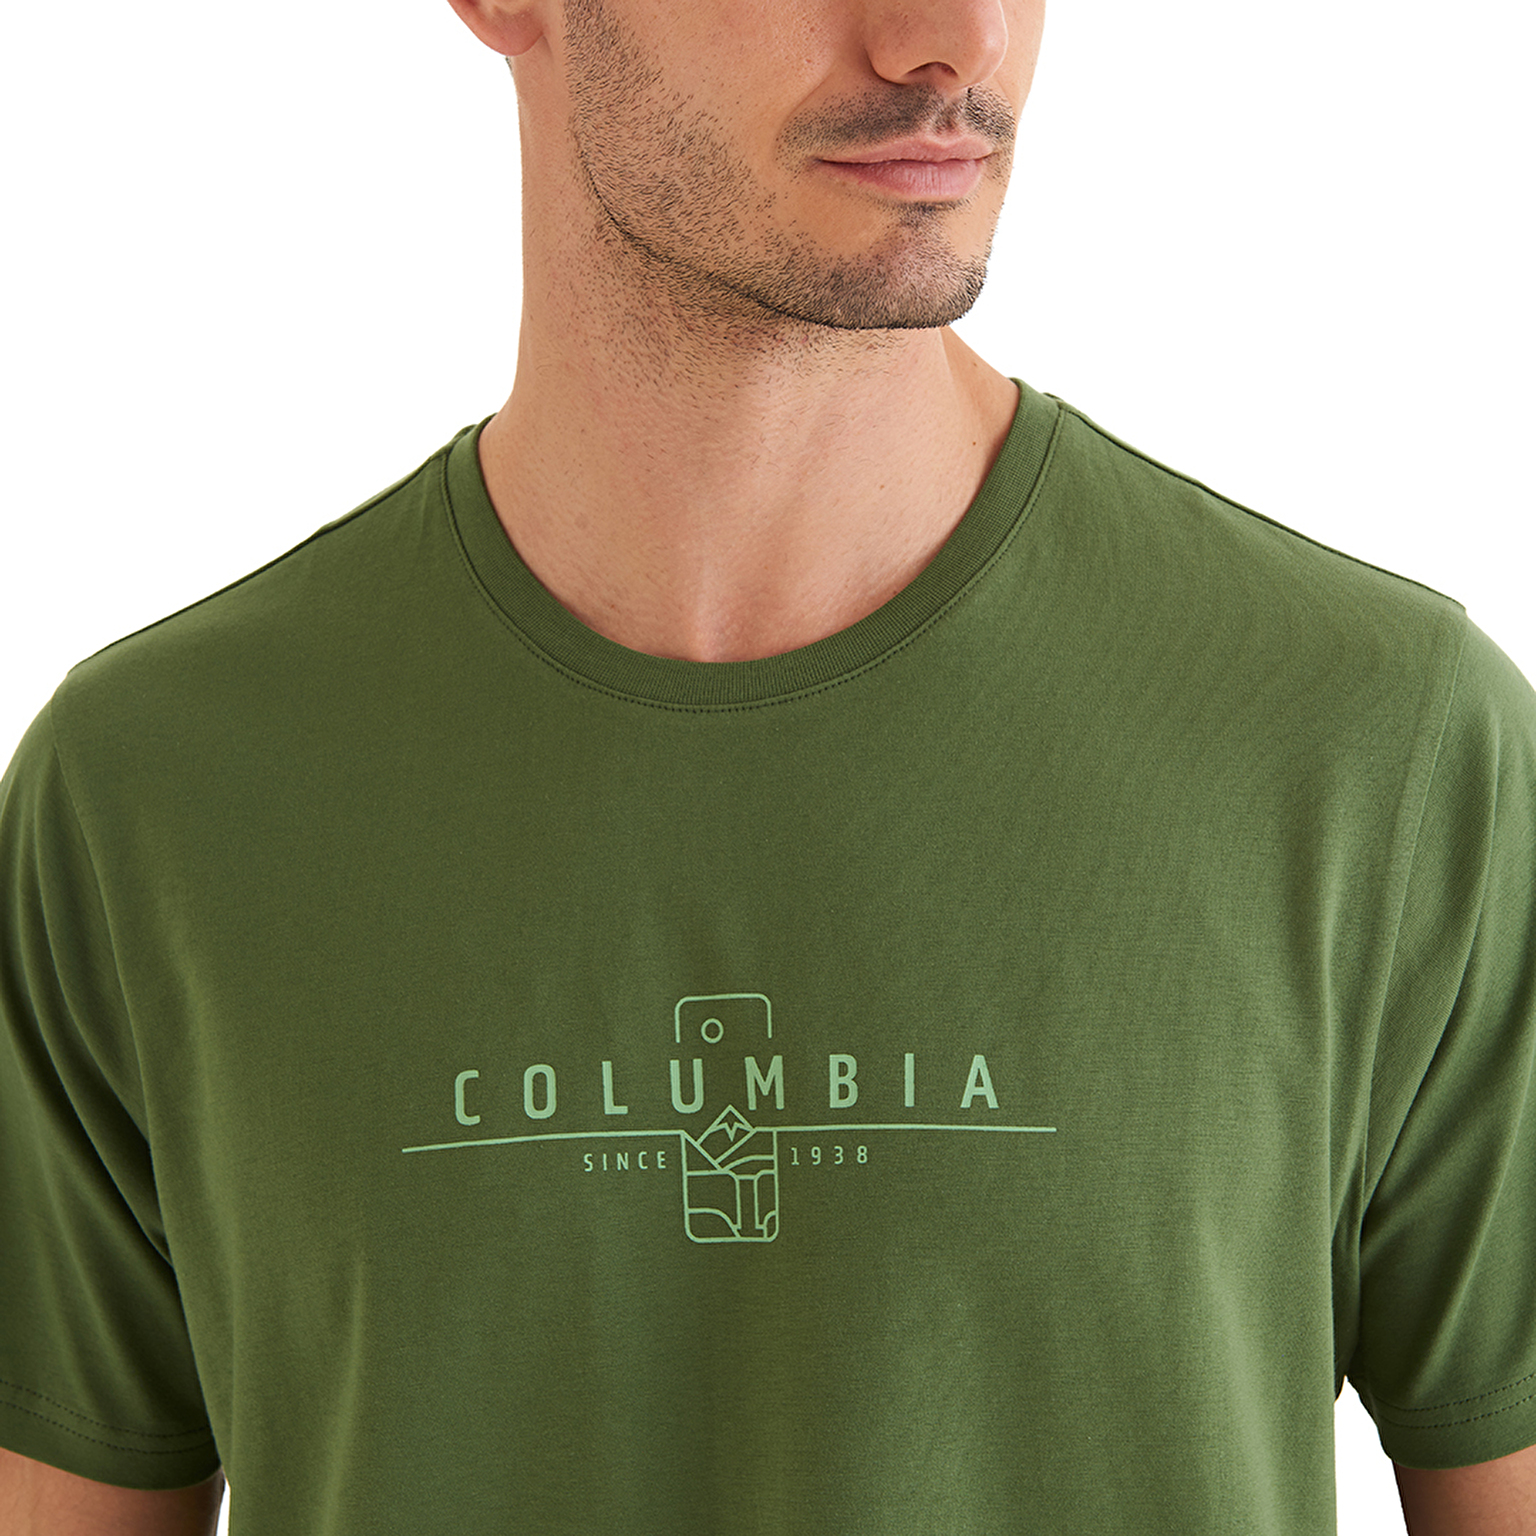 CSC Nature Rules Erkek Comfort Kısa Kollu T-shirt